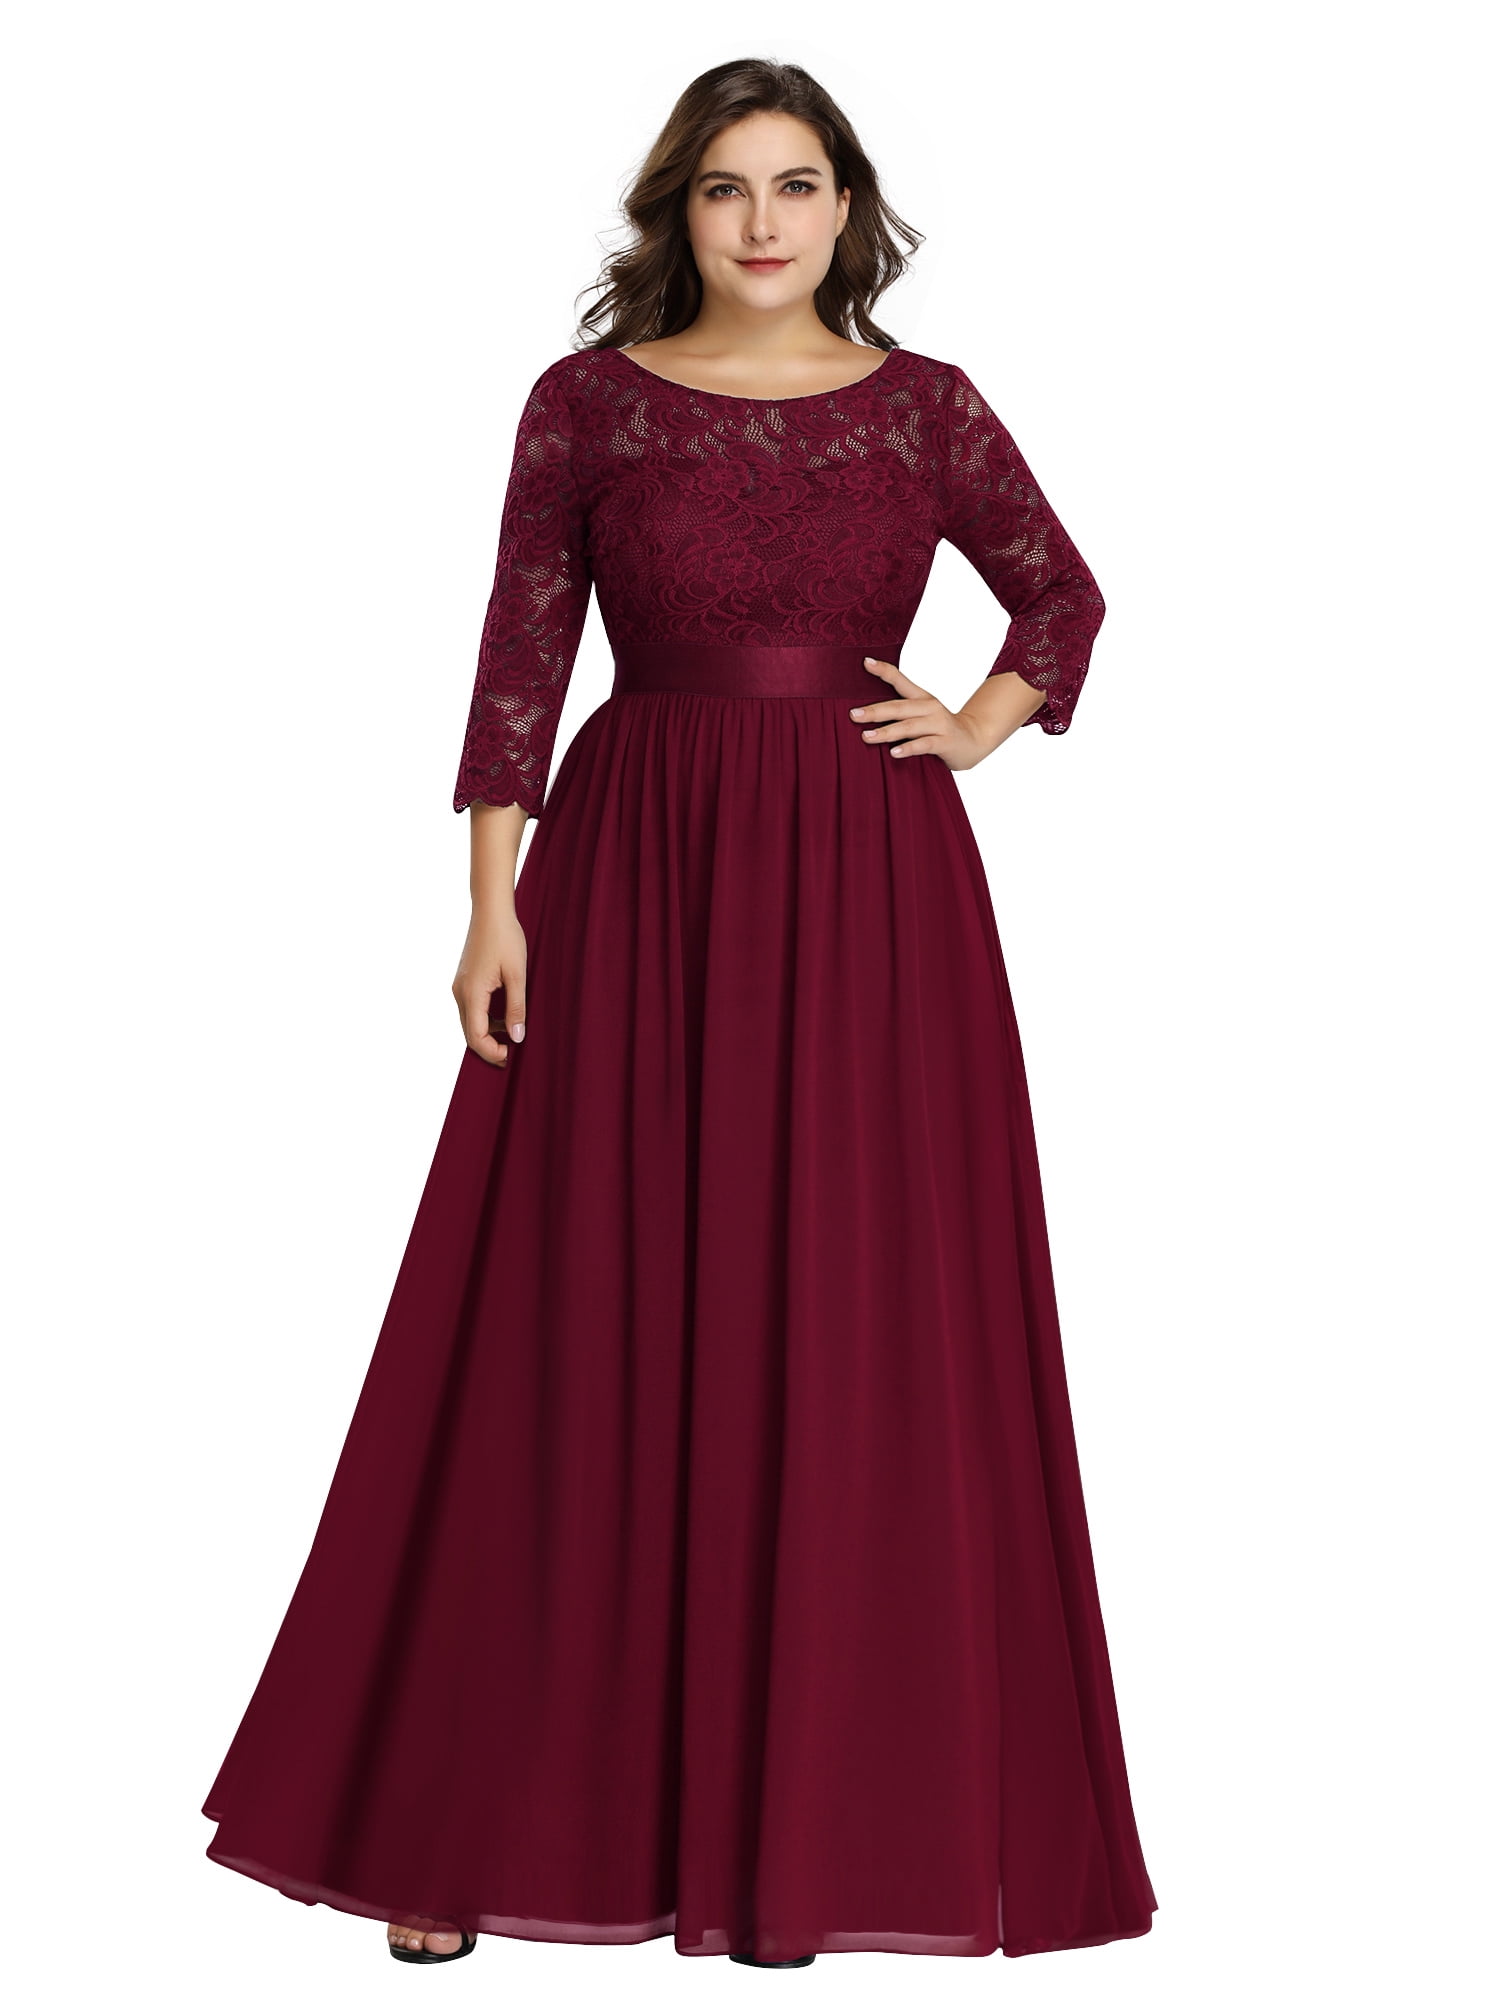 Ever-Pretty A-Line Sequins Bridesmaid Dress Long Burgundy Evening Dress 07401 